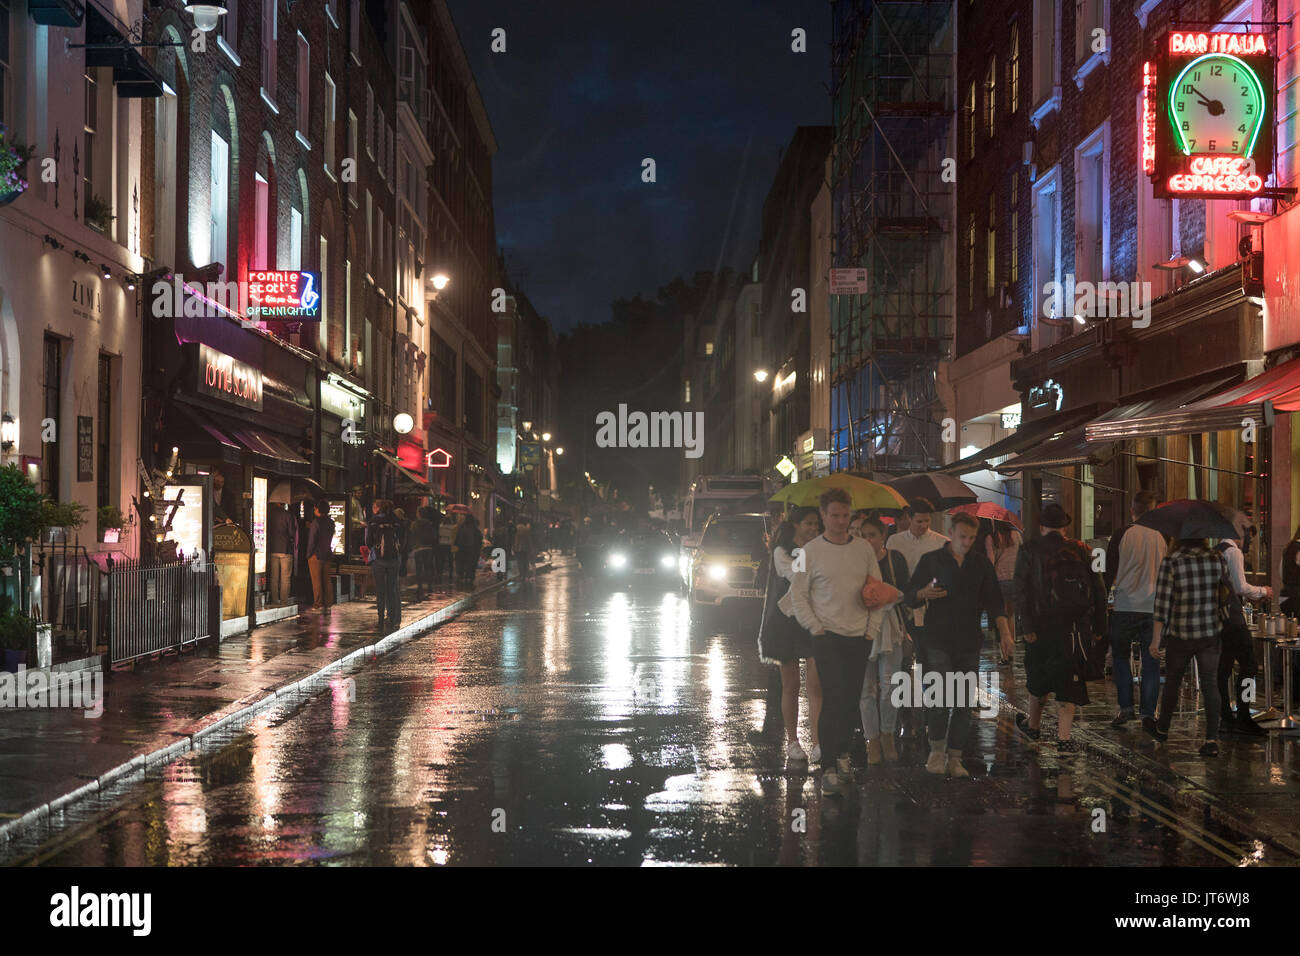 Eine Ansicht der Frith Street, mit Ronnie Scott's Jazz Club und Bar Italia. Aus einer Reihe von Fotos in einer regnerischen Nacht in Soho, London. Foto Datum: Stockfoto